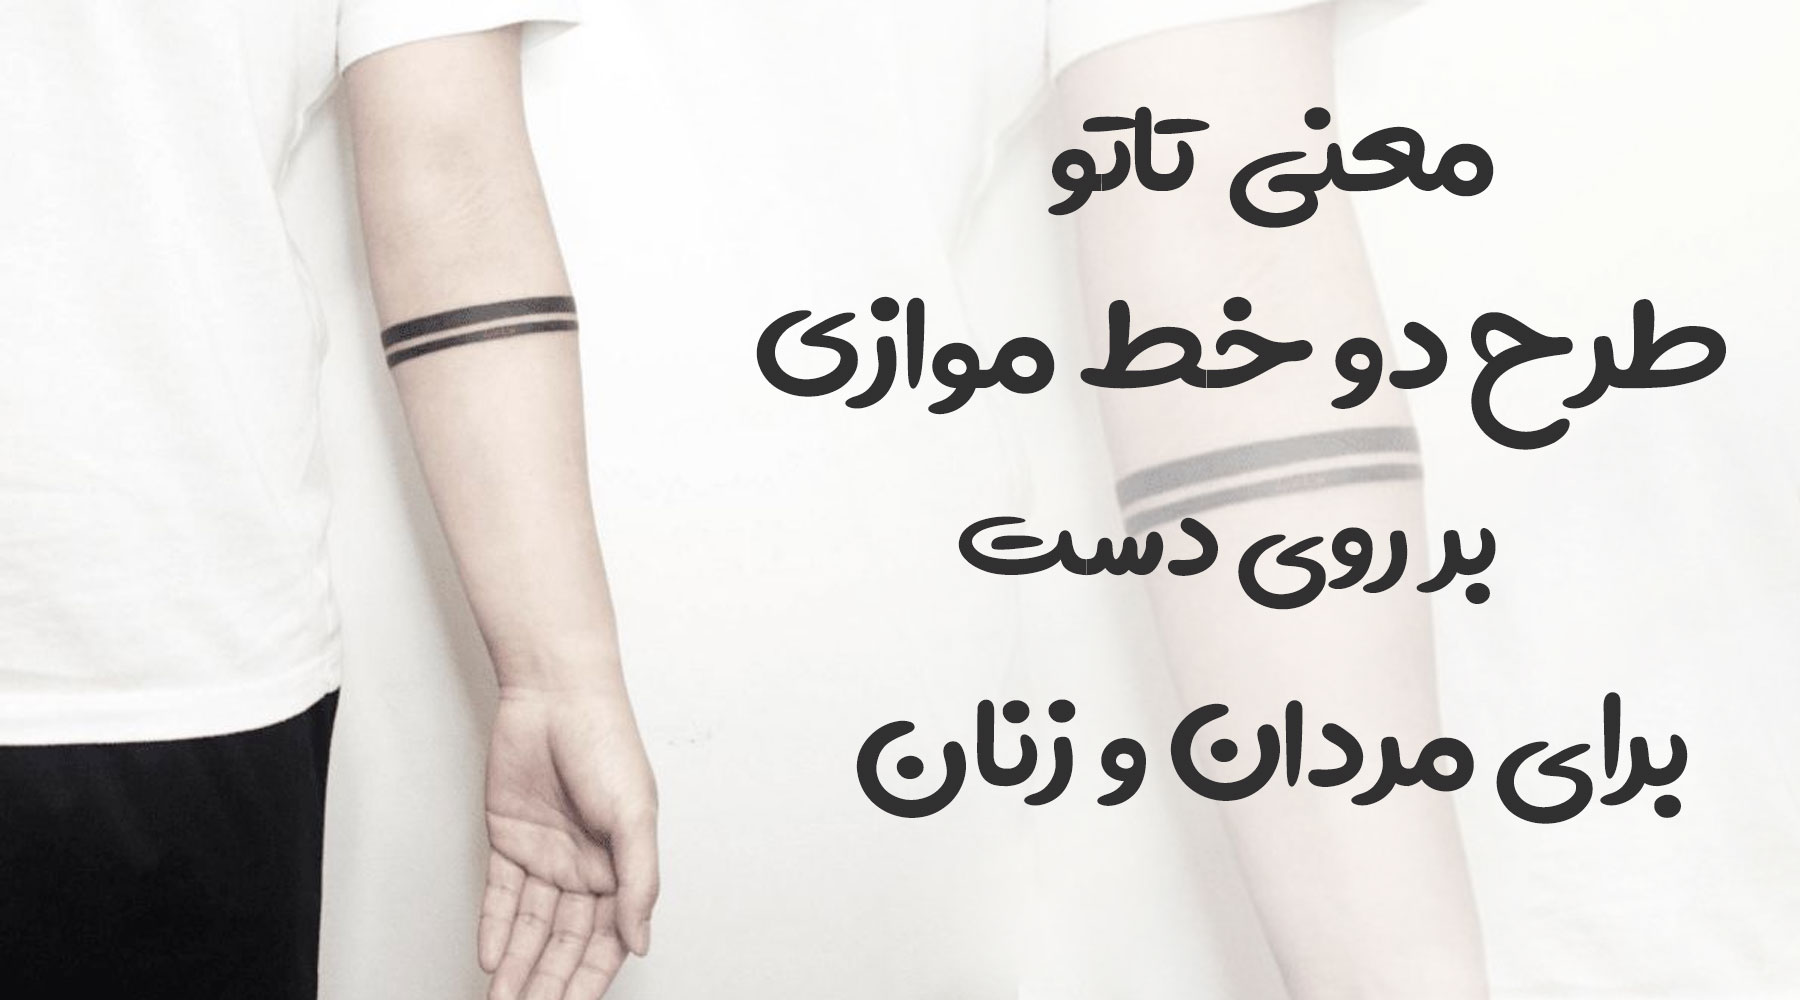 معنی تاتو طرح دو خط موازی بر روی دست برای مردان و زنان